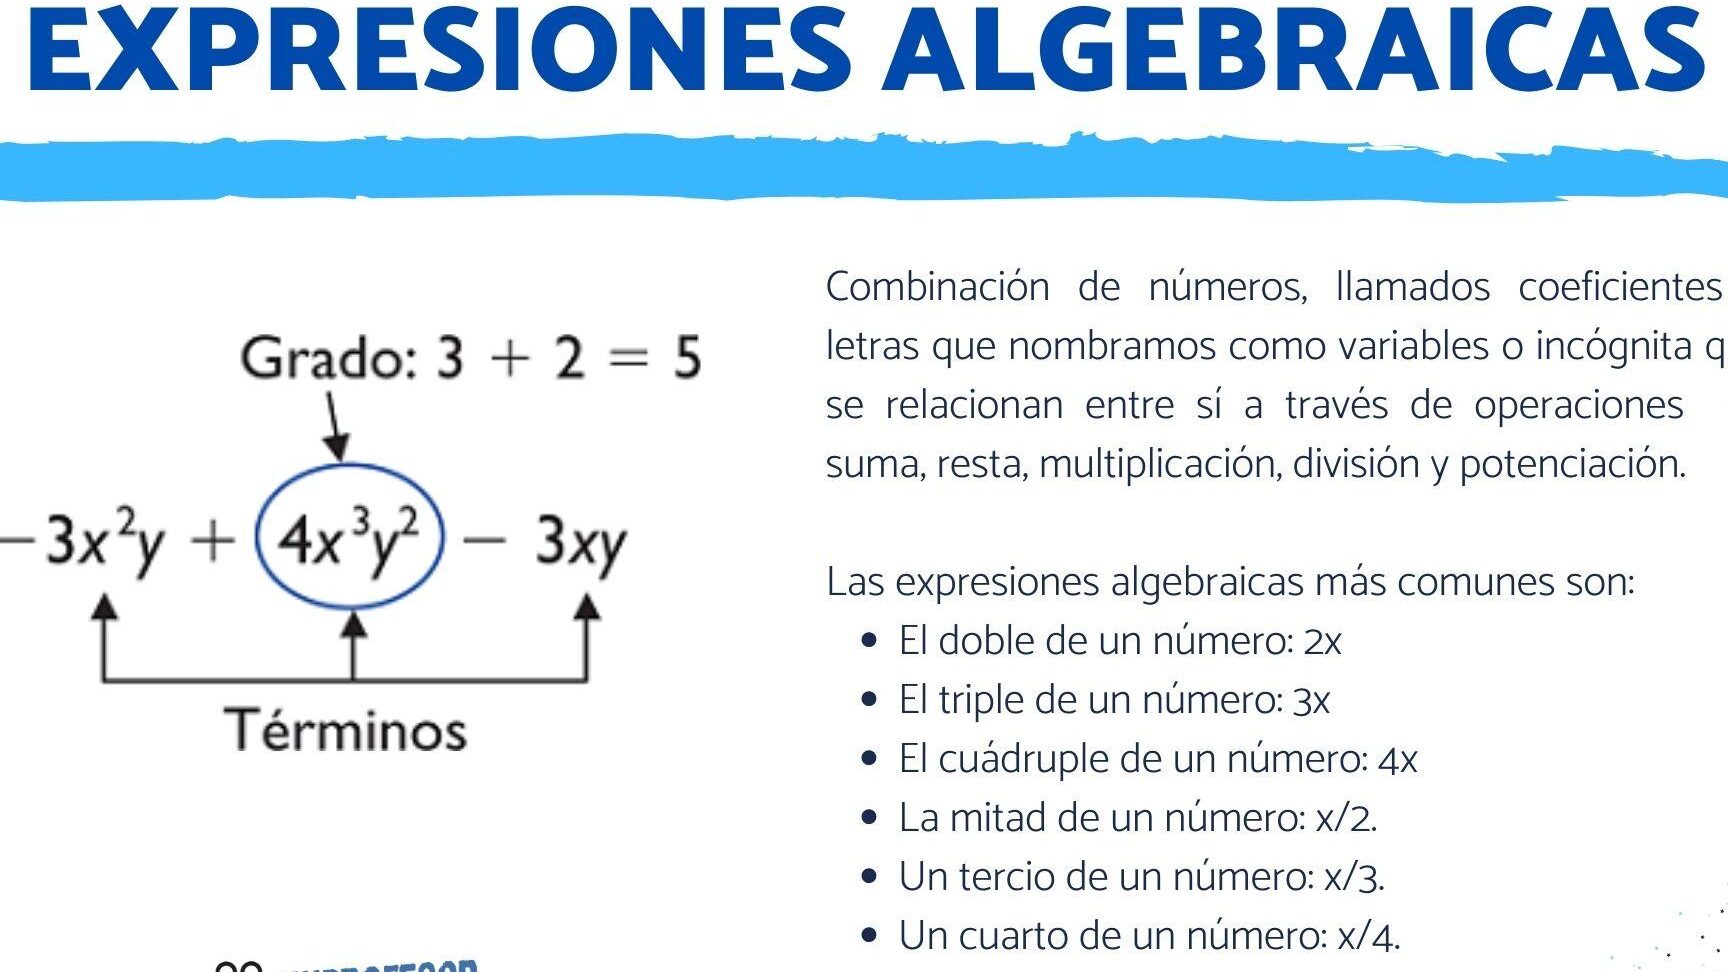 Explicación de una expresión matemática con números y operaciones.